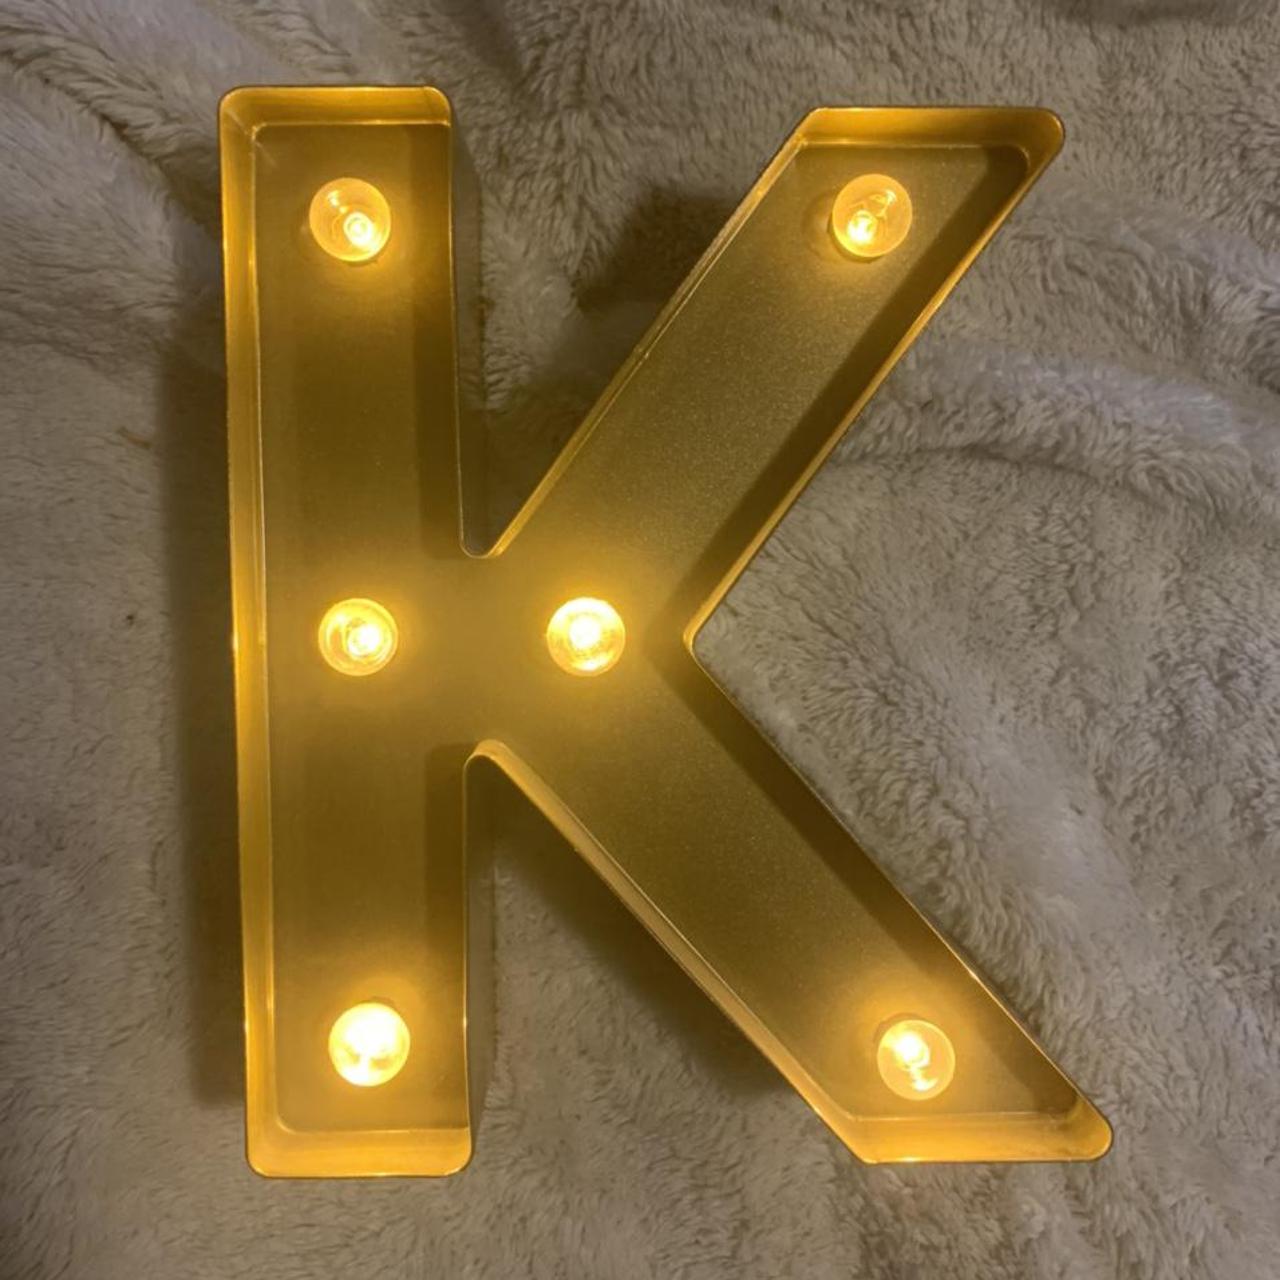 Product Image 1 - Light-up “K” room decor sign
#goldsign